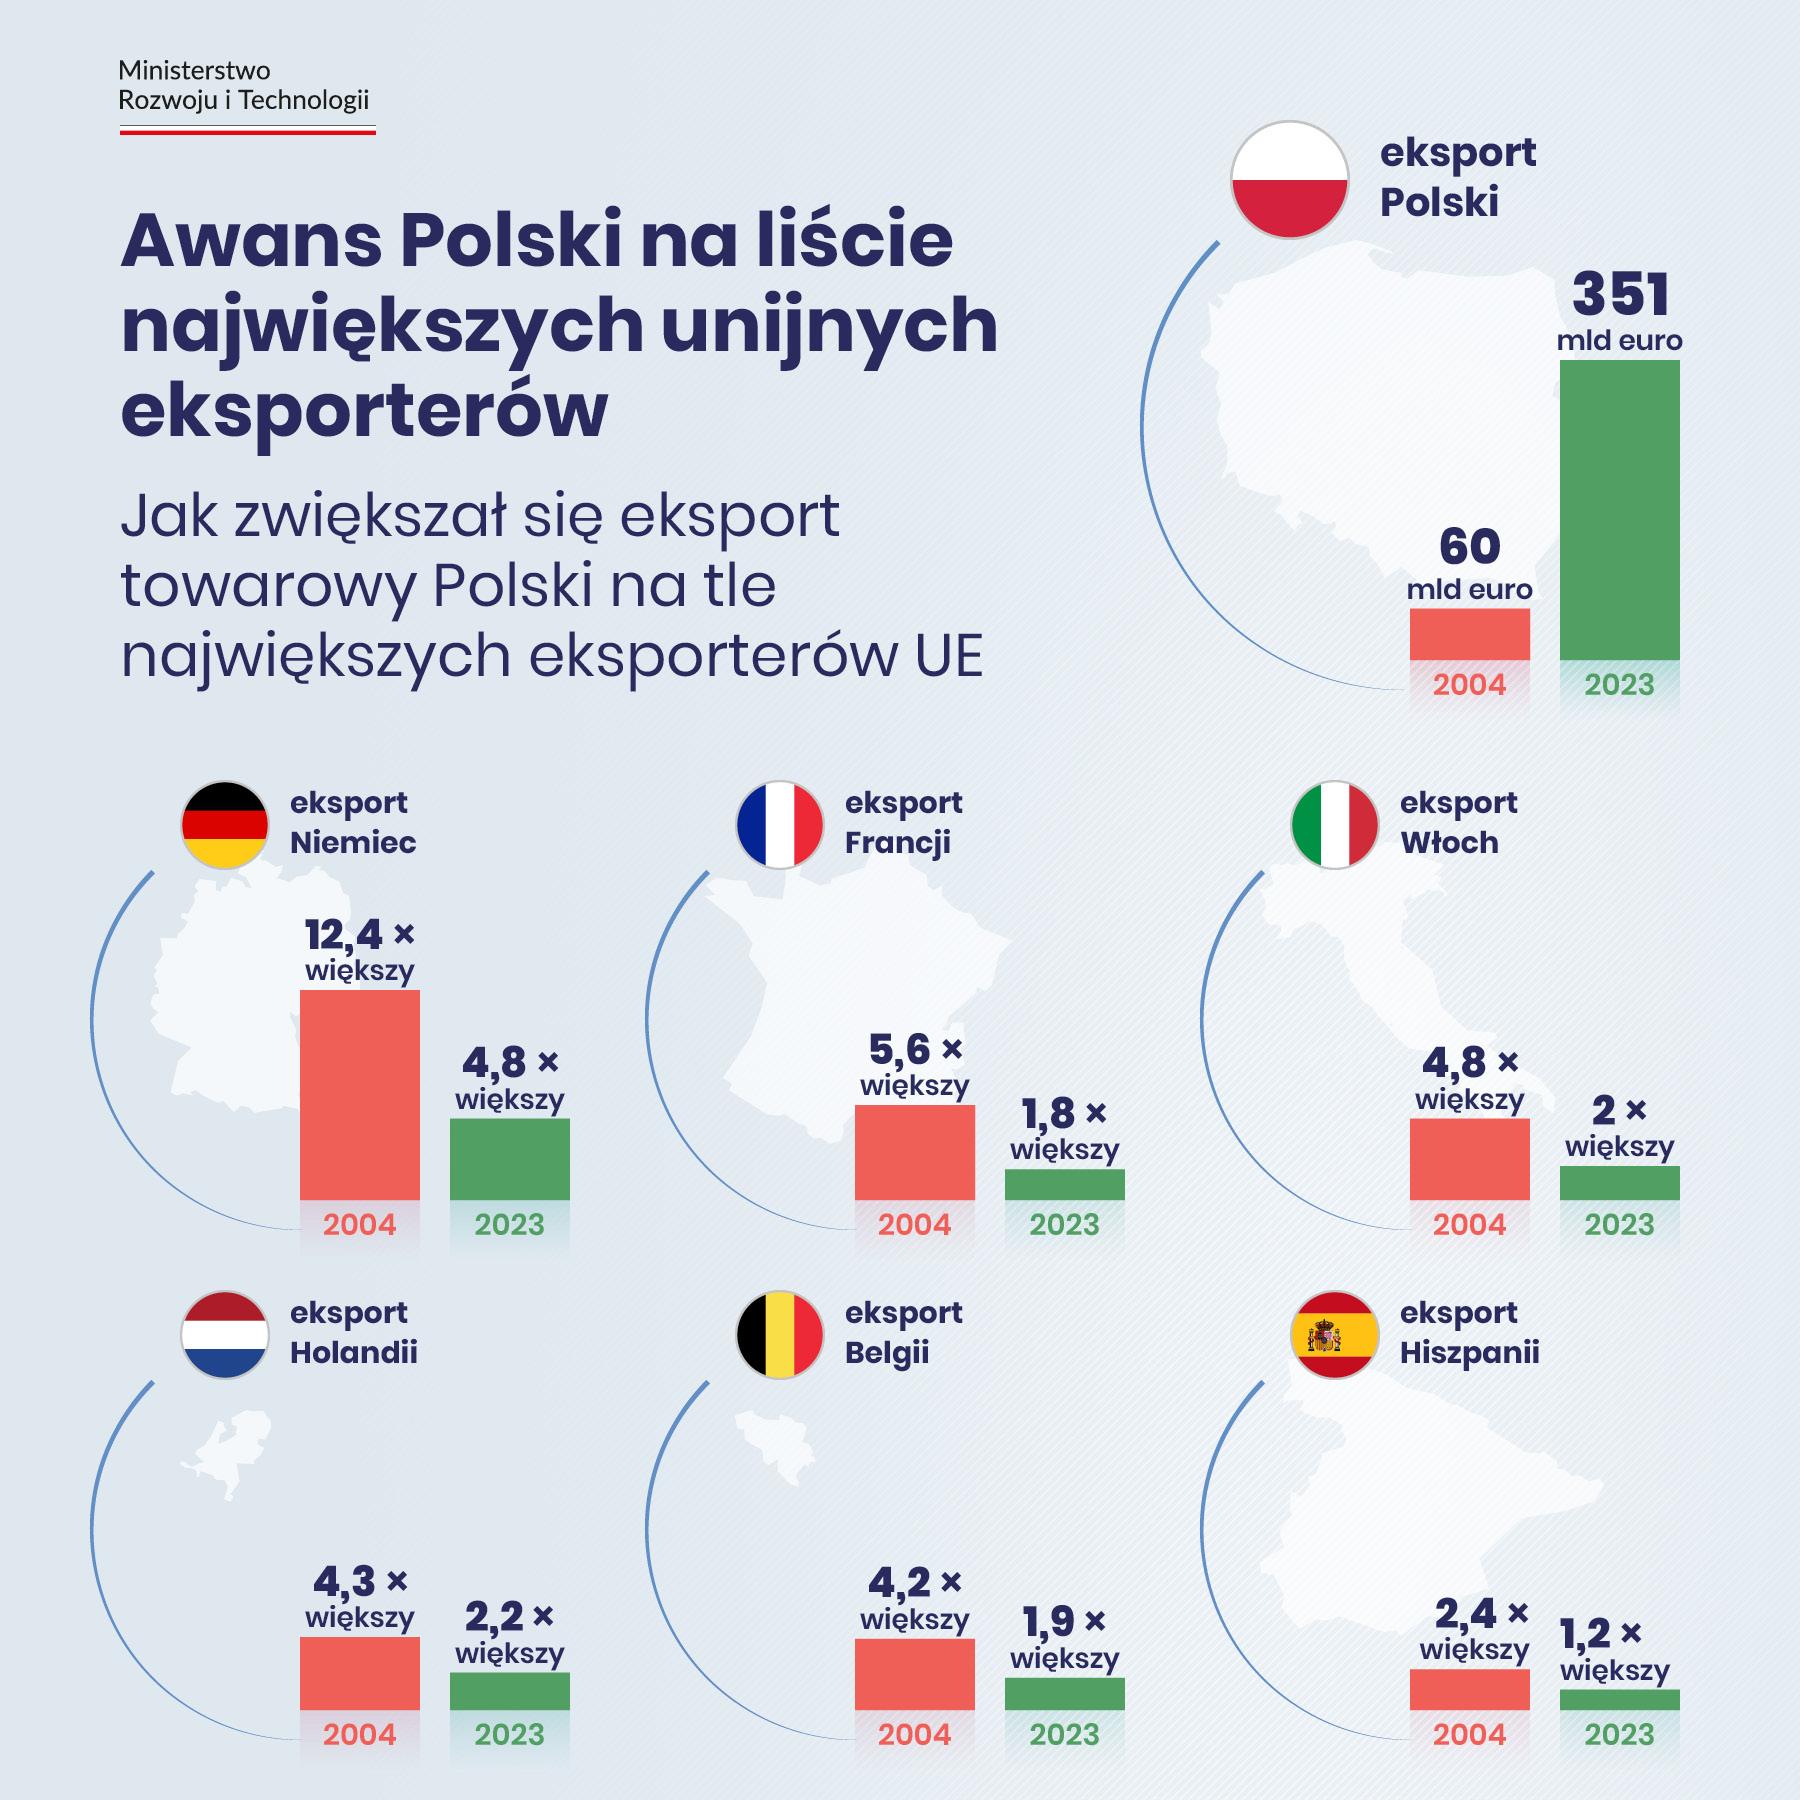 Napis na grafice: Awans Polski na liście największych unijnych eksporterów. Jak zwiększał się eksport towarowy Polski na tle największych eksporterów UE. Siedem wykresów słupkowych: 1. eksport Polski: 60 mld euro w 2004 r. 351 mld euro w 2023 r. 2. eksport Niemiec: 12,4 razy większy w 2004 r., 4,8 razy większy w 2023 r. 3. eksport Francji: 5,6 razy większy w 2004 r., 1,8 razy większy w 2023 r. 4. eksport Włoch: 4,8 razy większy w 2004 r., 2 razy większy w 2023 r. 5. eksport Holandii: 4,3 razy większy w 2004 r., 2,2 razy większy w 2023 r. 6. eksport Belgii: 4,2 razy większy w 2004 r., 1,9 razy większy w 2023 r. 7. eksport Hiszpanii: 2,4 razy większy w 2004 r., 1,2 razy większy w 2023 r.